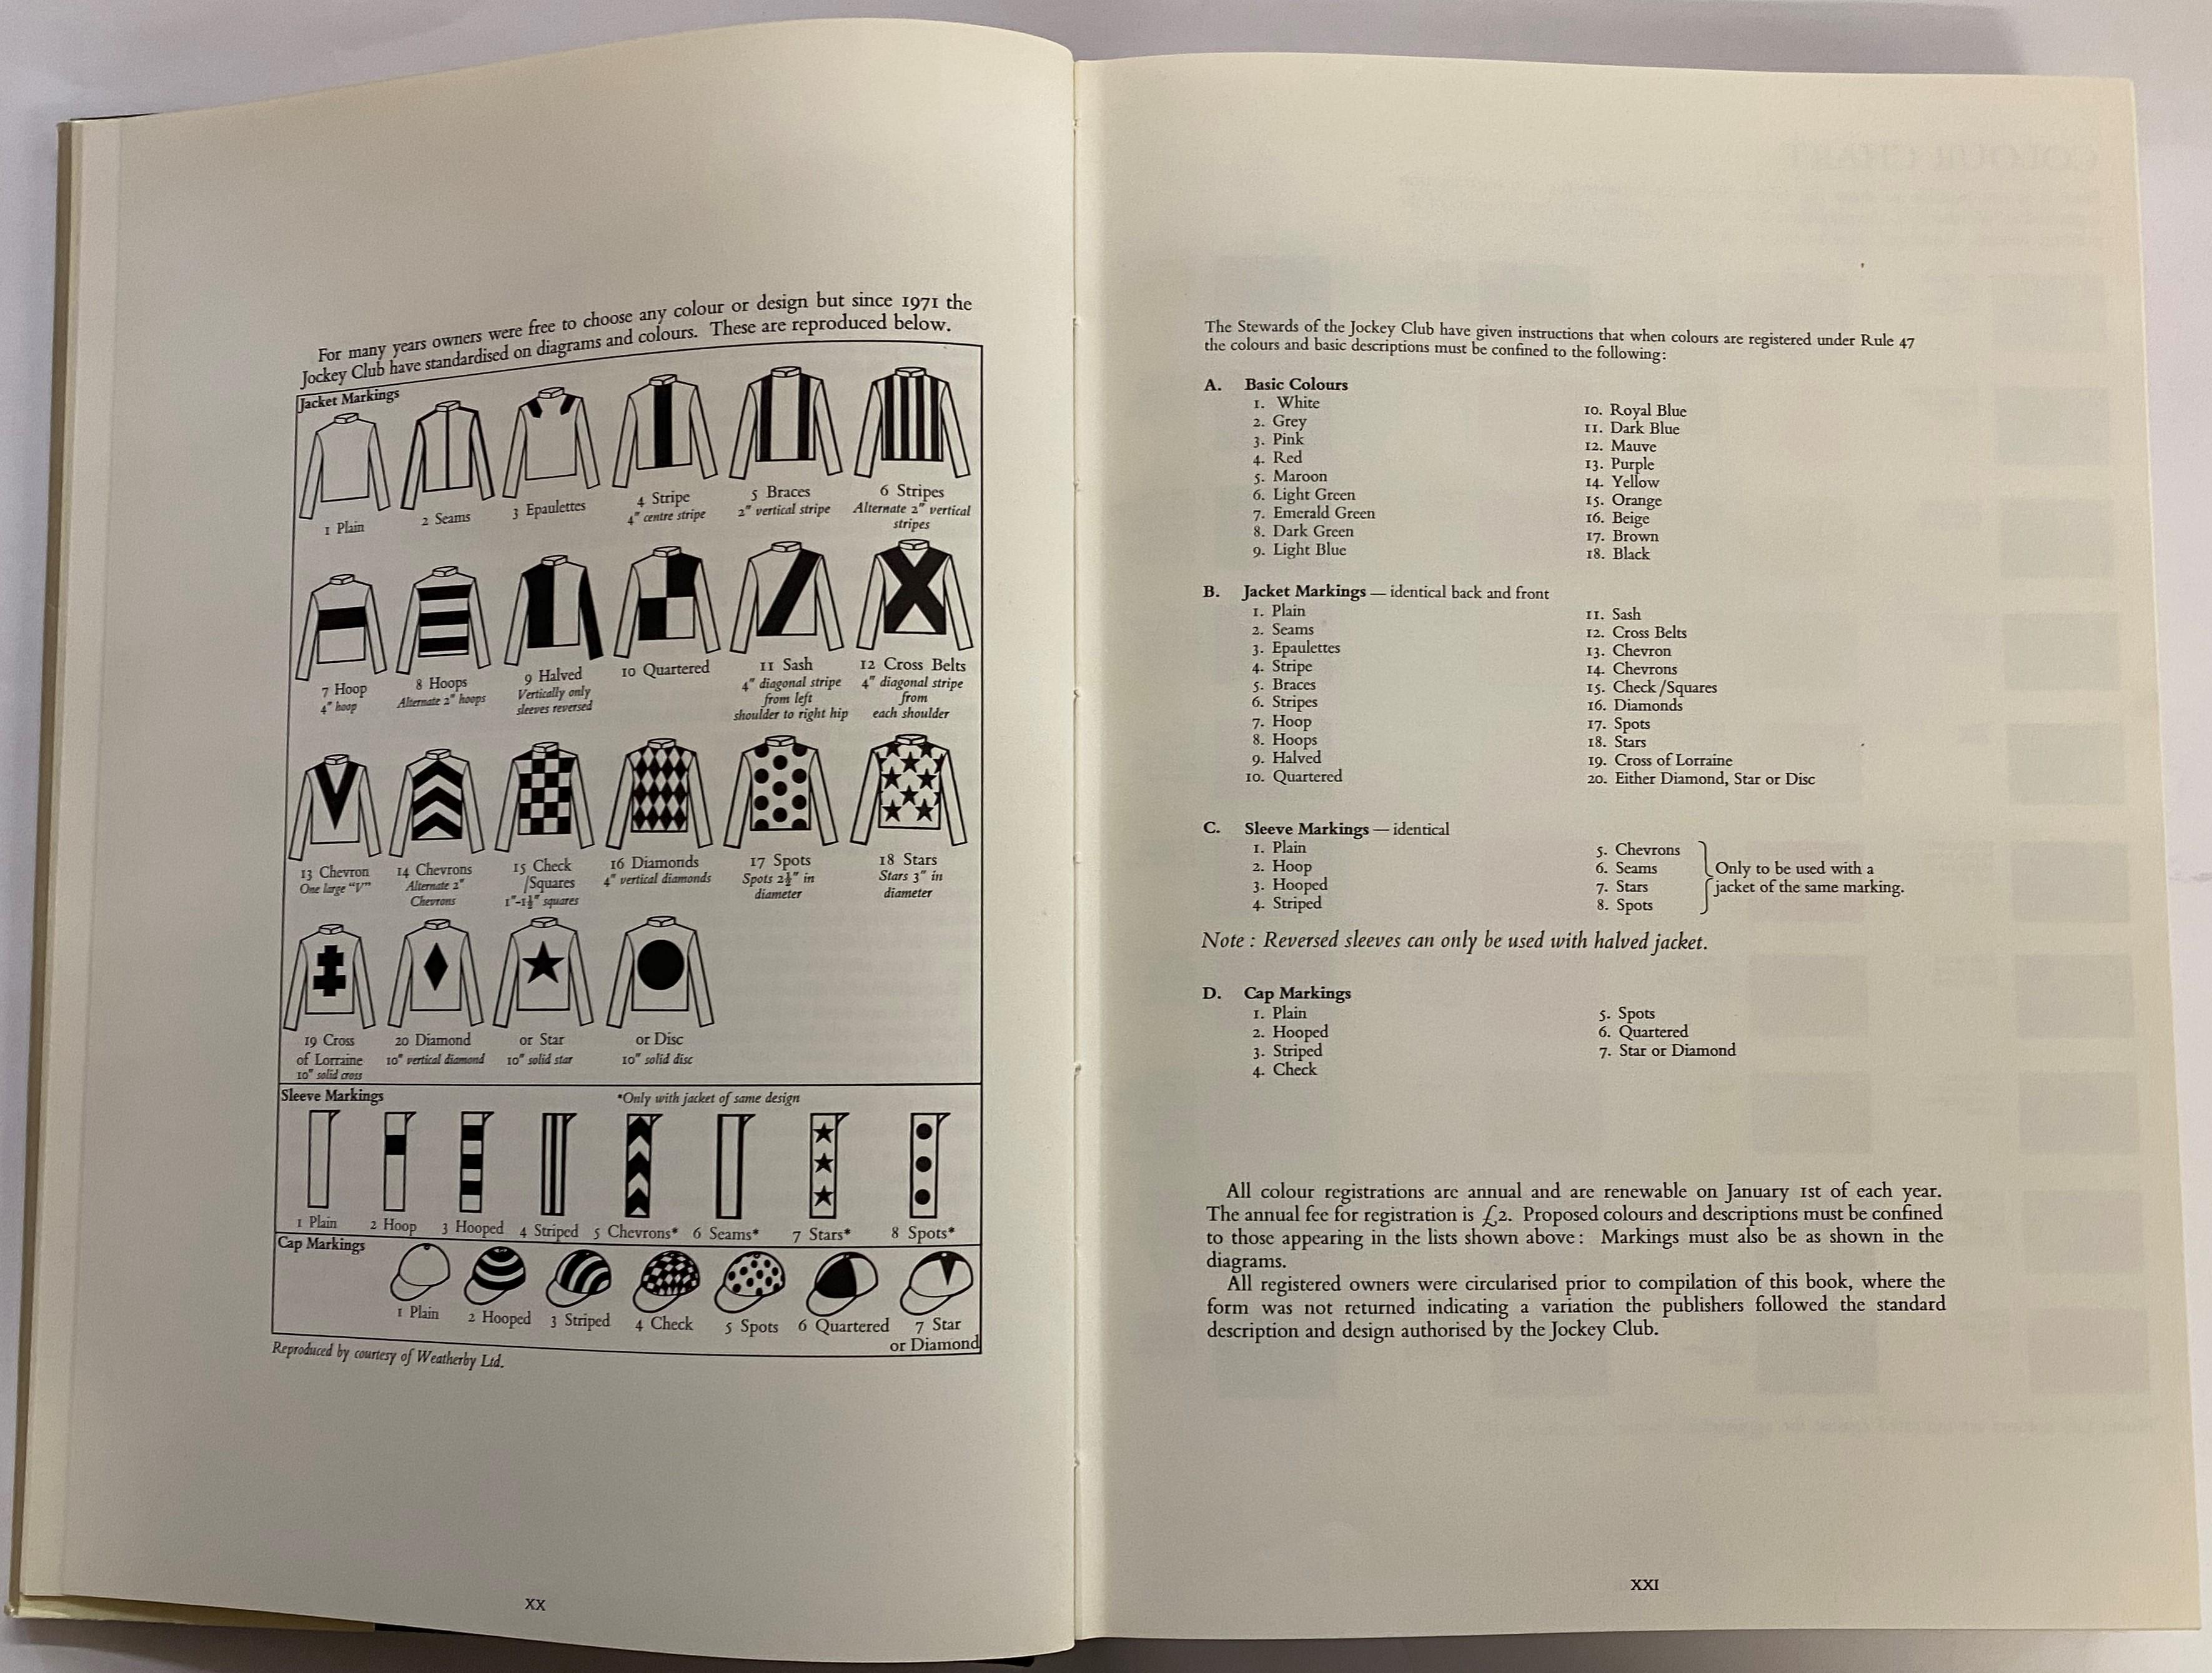 Einführung von Generalmajor Sir Randle Feilden, K.C.V.O., C.B., C.B.E. (Senior Steward des Jockey Club)
Ein Bildwörterbuch der Rennfarben, das sowohl ein grafisches Kunstwerk als auch ein Nachschlagewerk ist. Jede Seite enthält ein Raster von 30